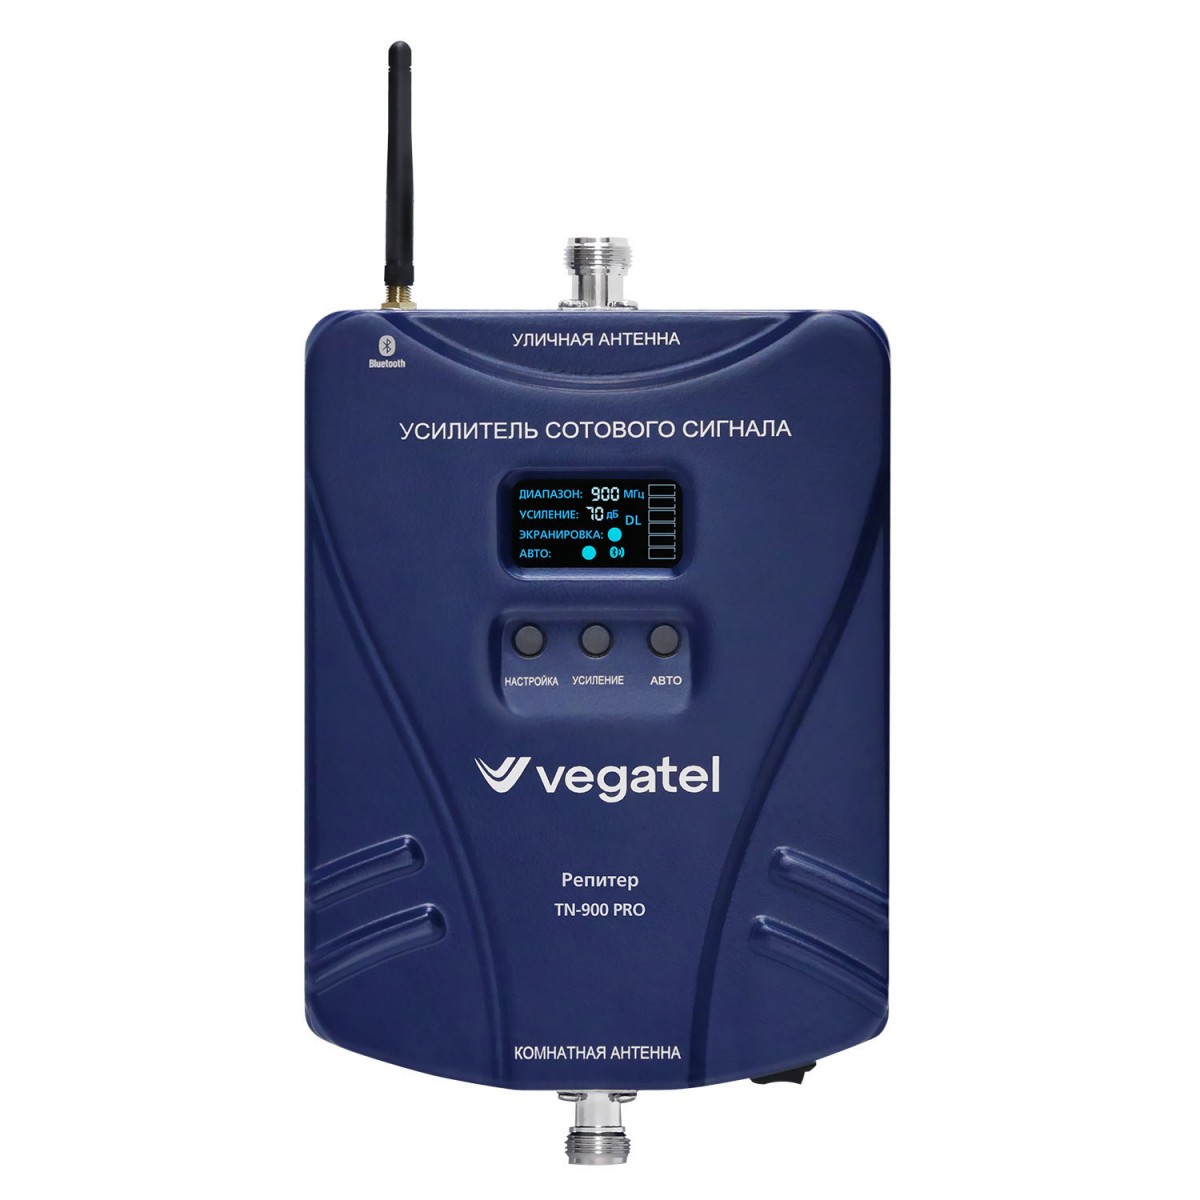 Детальное изображение товара "Комплект усиления сотовой связи Vegatel TN-900 PRO" из каталога оборудования Антенна76